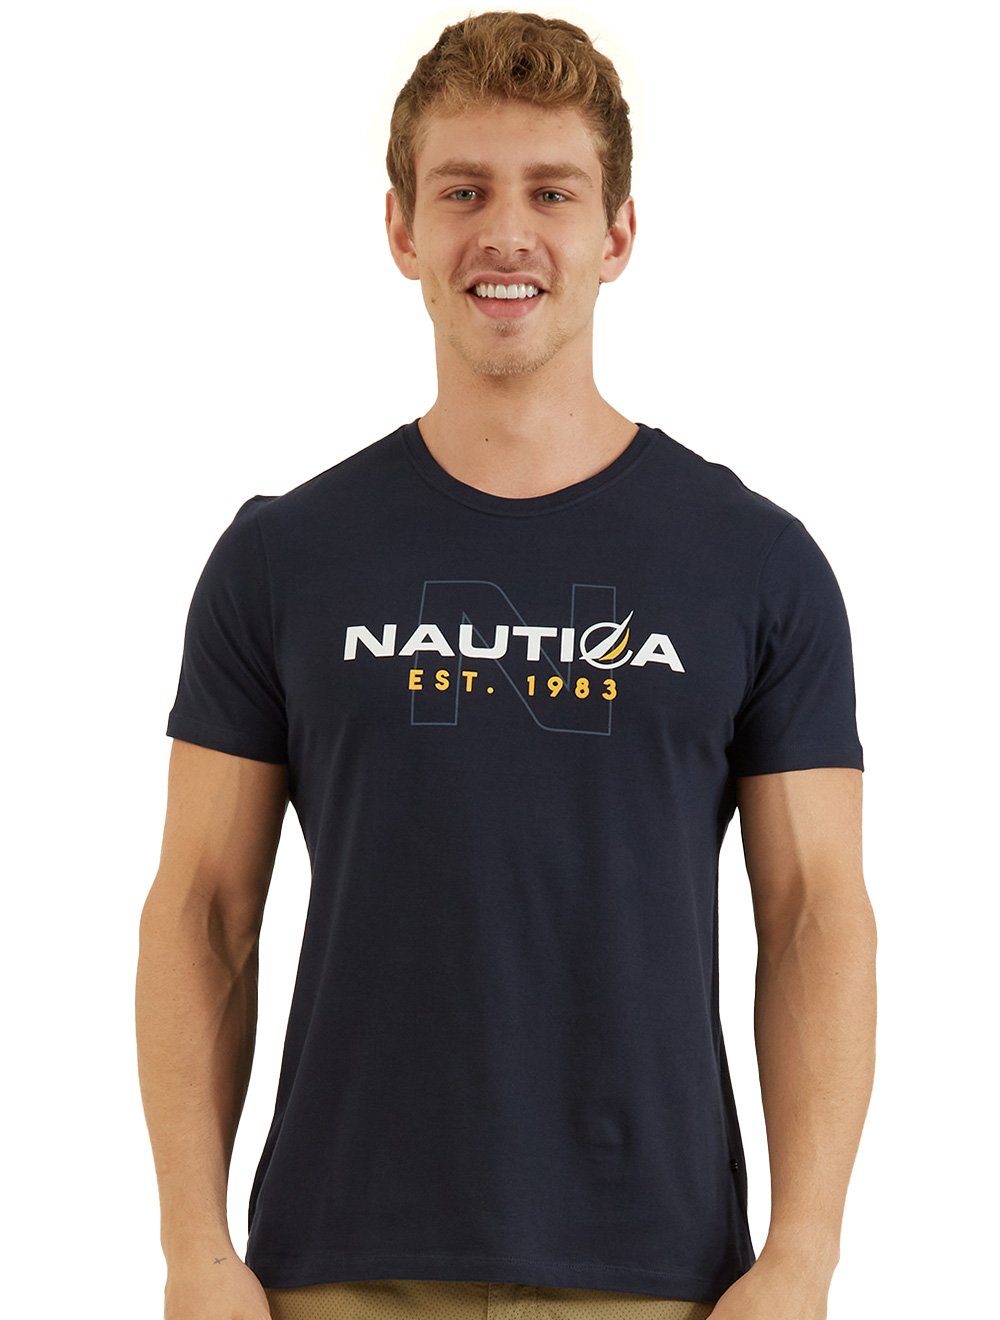 Camiseta Nautica Masculina Outline N Est. 1983 Azul Marinho